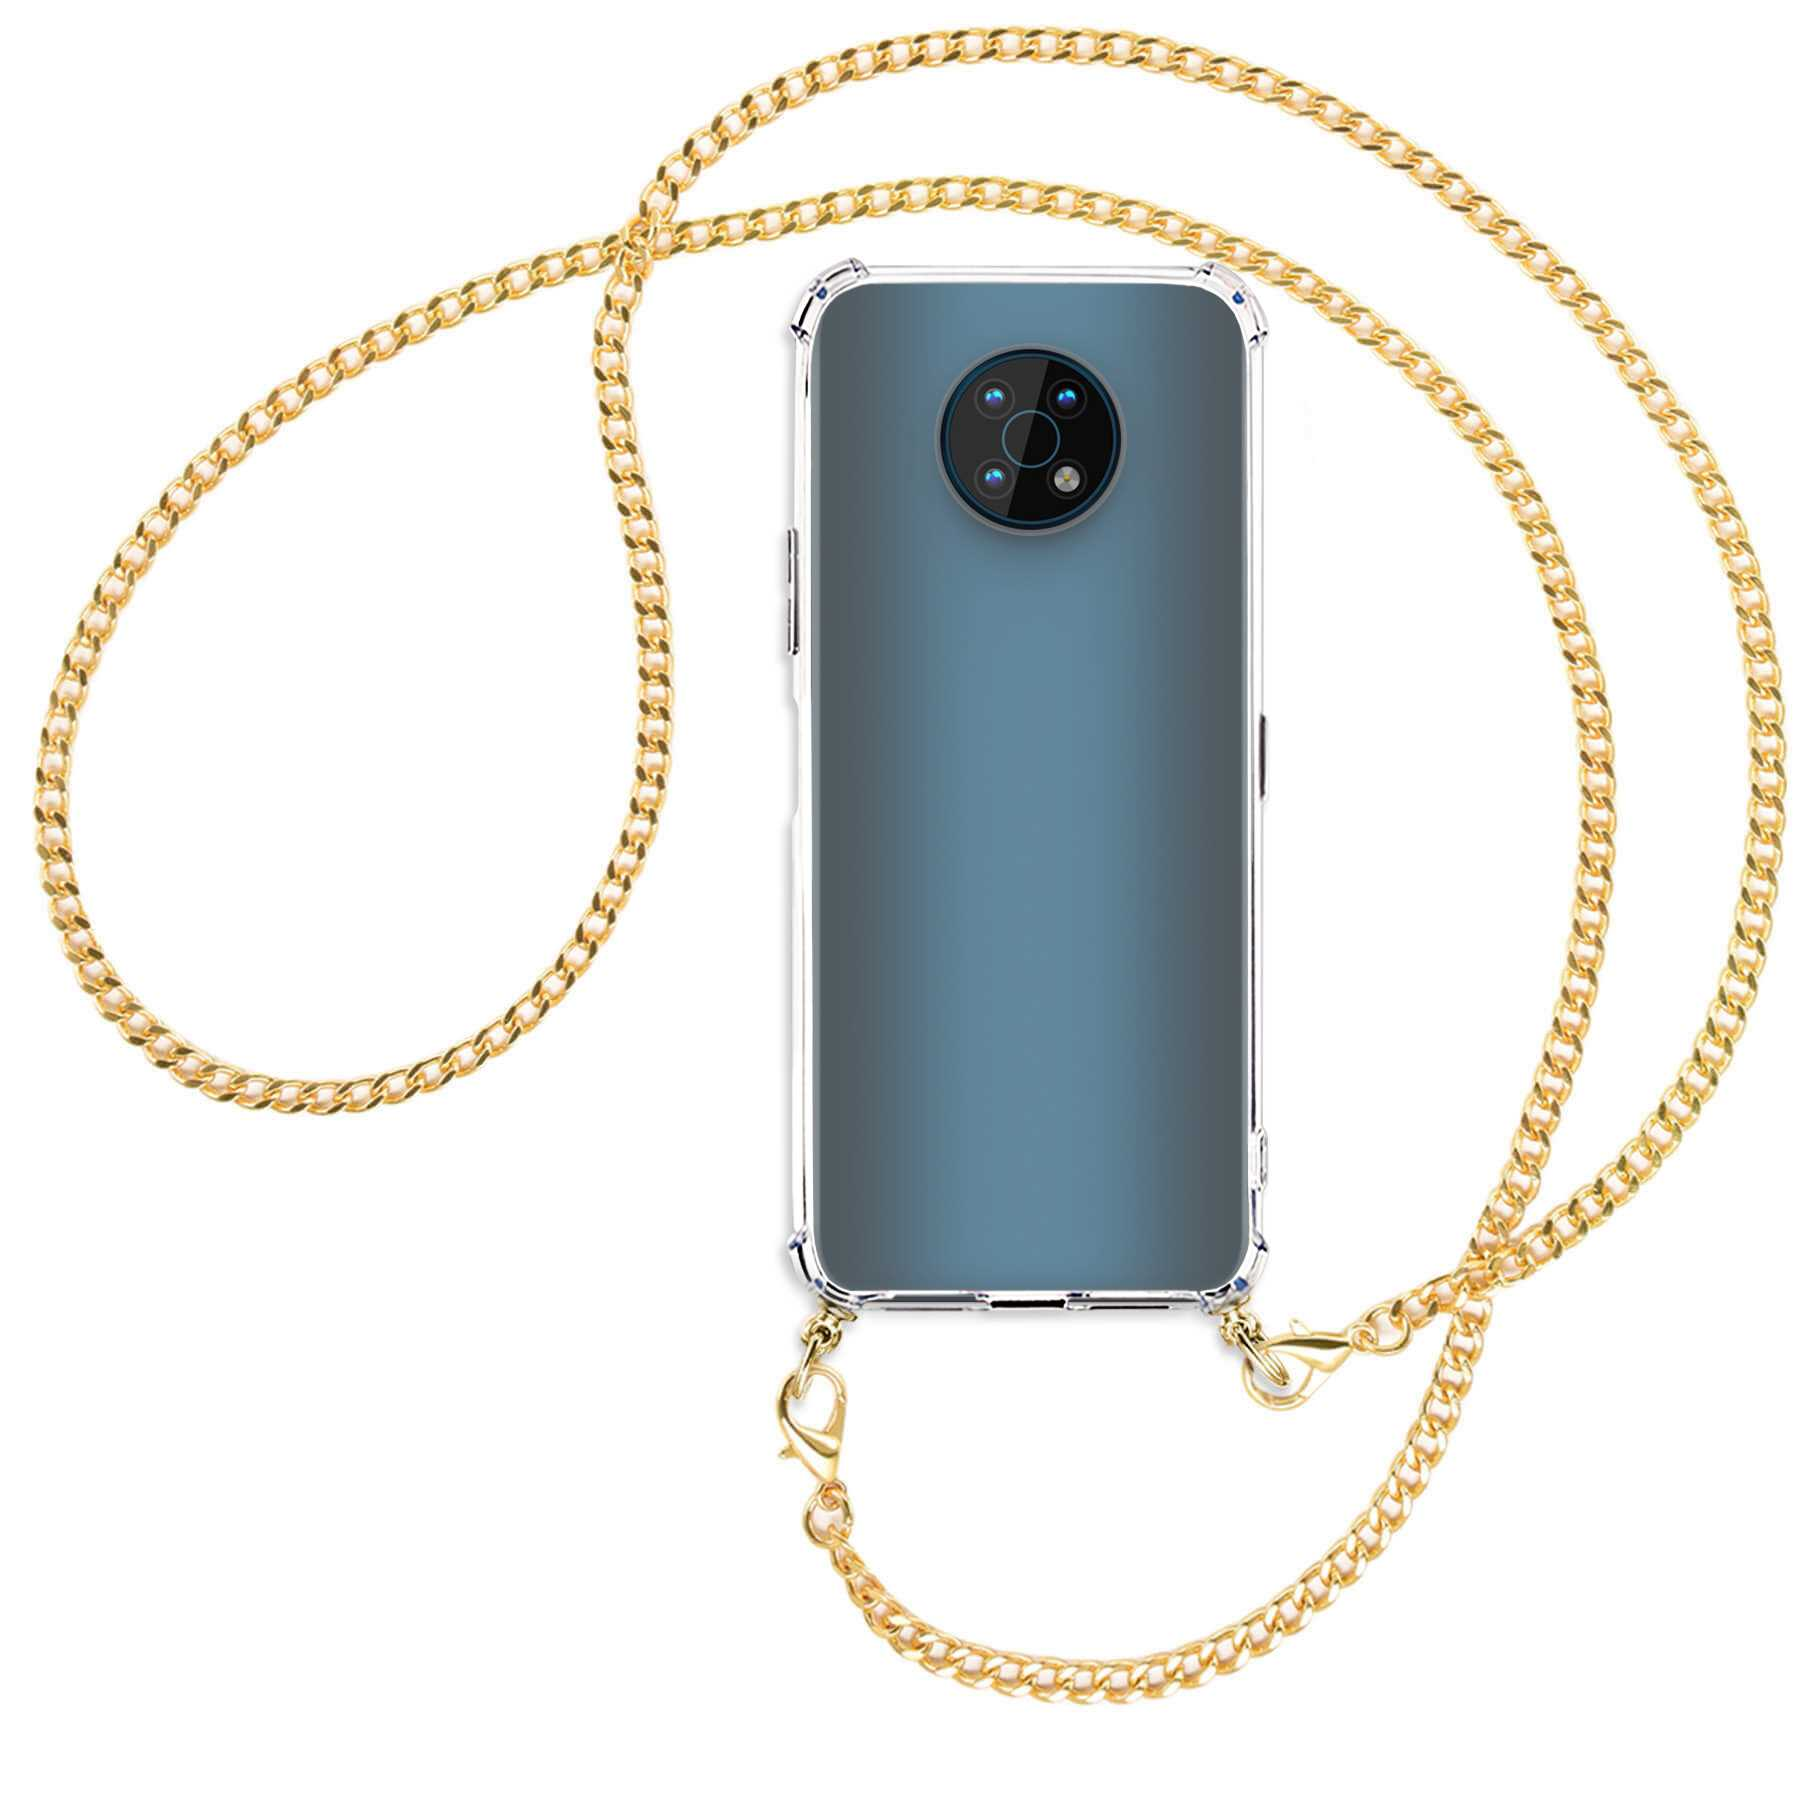 MTB MORE ENERGY Umhänge-Hülle mit Nokia, Metallkette, (goldfarben) Kette Backcover, G50